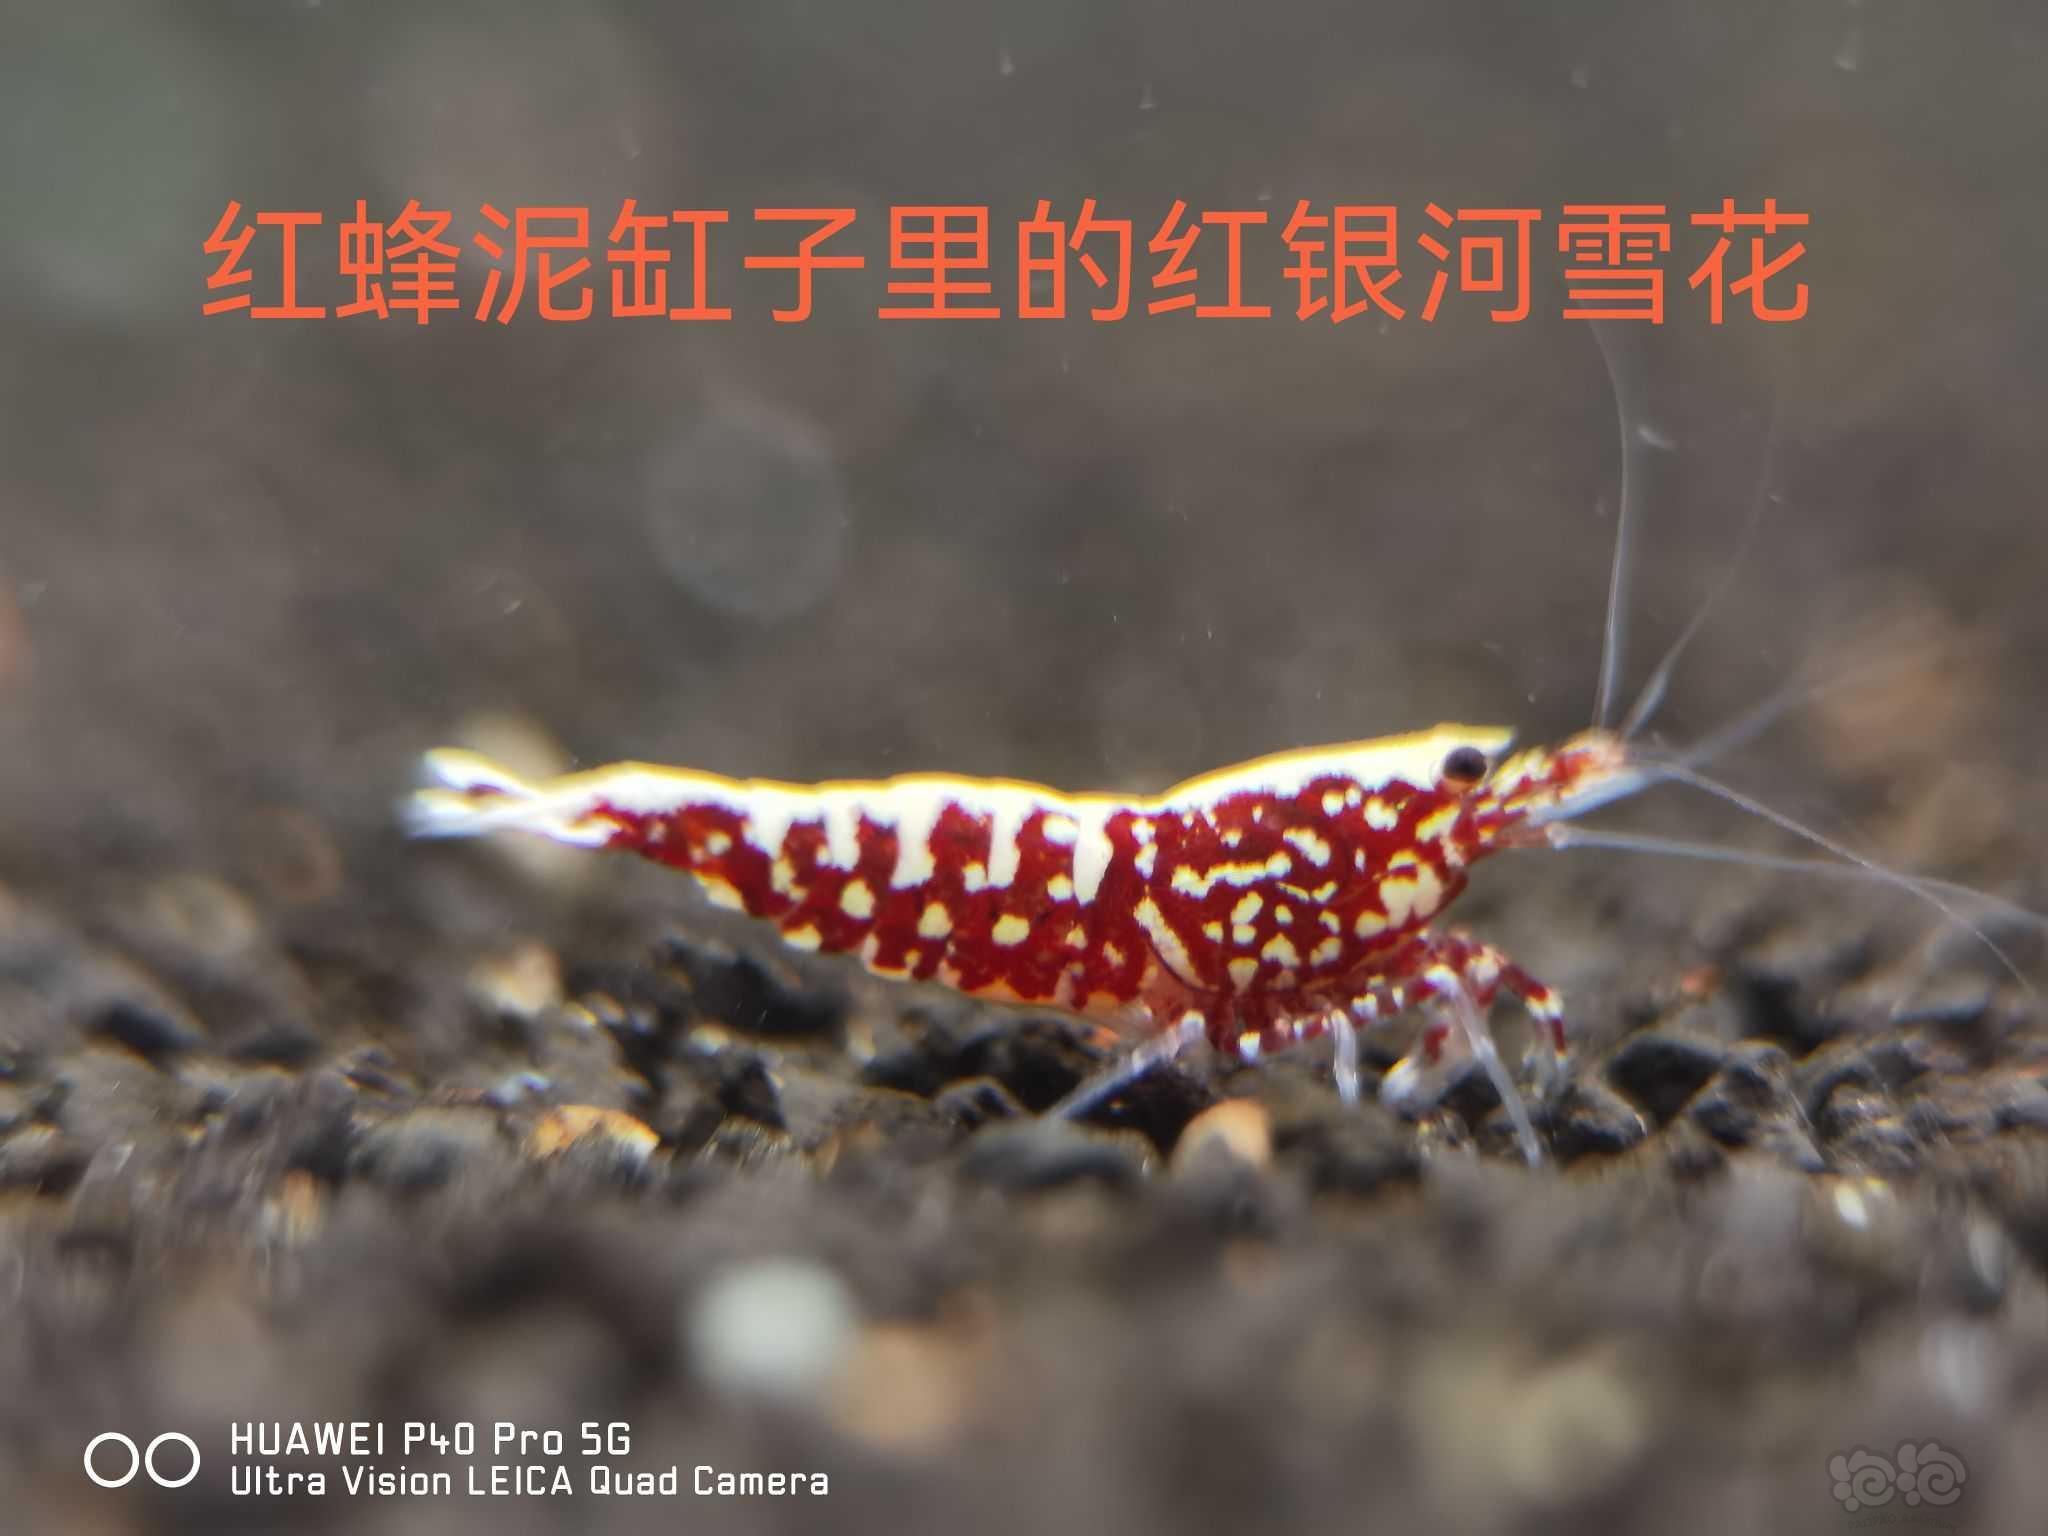 【用品】2021-11-4#RMB拍卖#日本原装进口红蜂水晶虾泥-图2